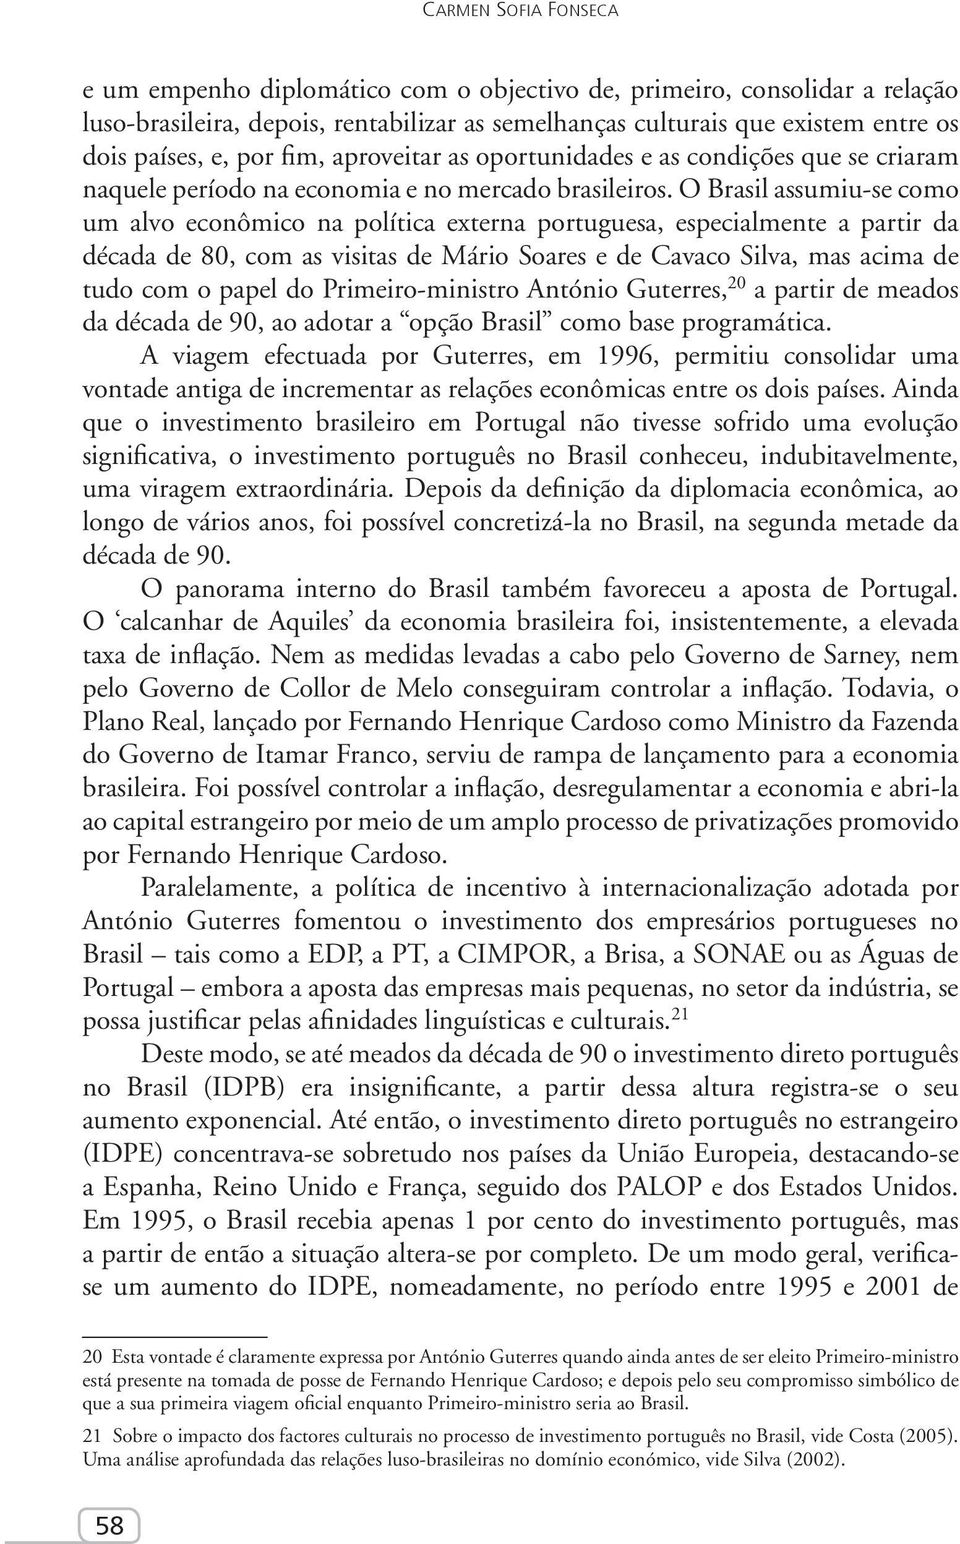 O Brasil assumiu-se como um alvo econômico na política externa portuguesa, especialmente a partir da década de 80, com as visitas de Mário Soares e de Cavaco Silva, mas acima de tudo com o papel do